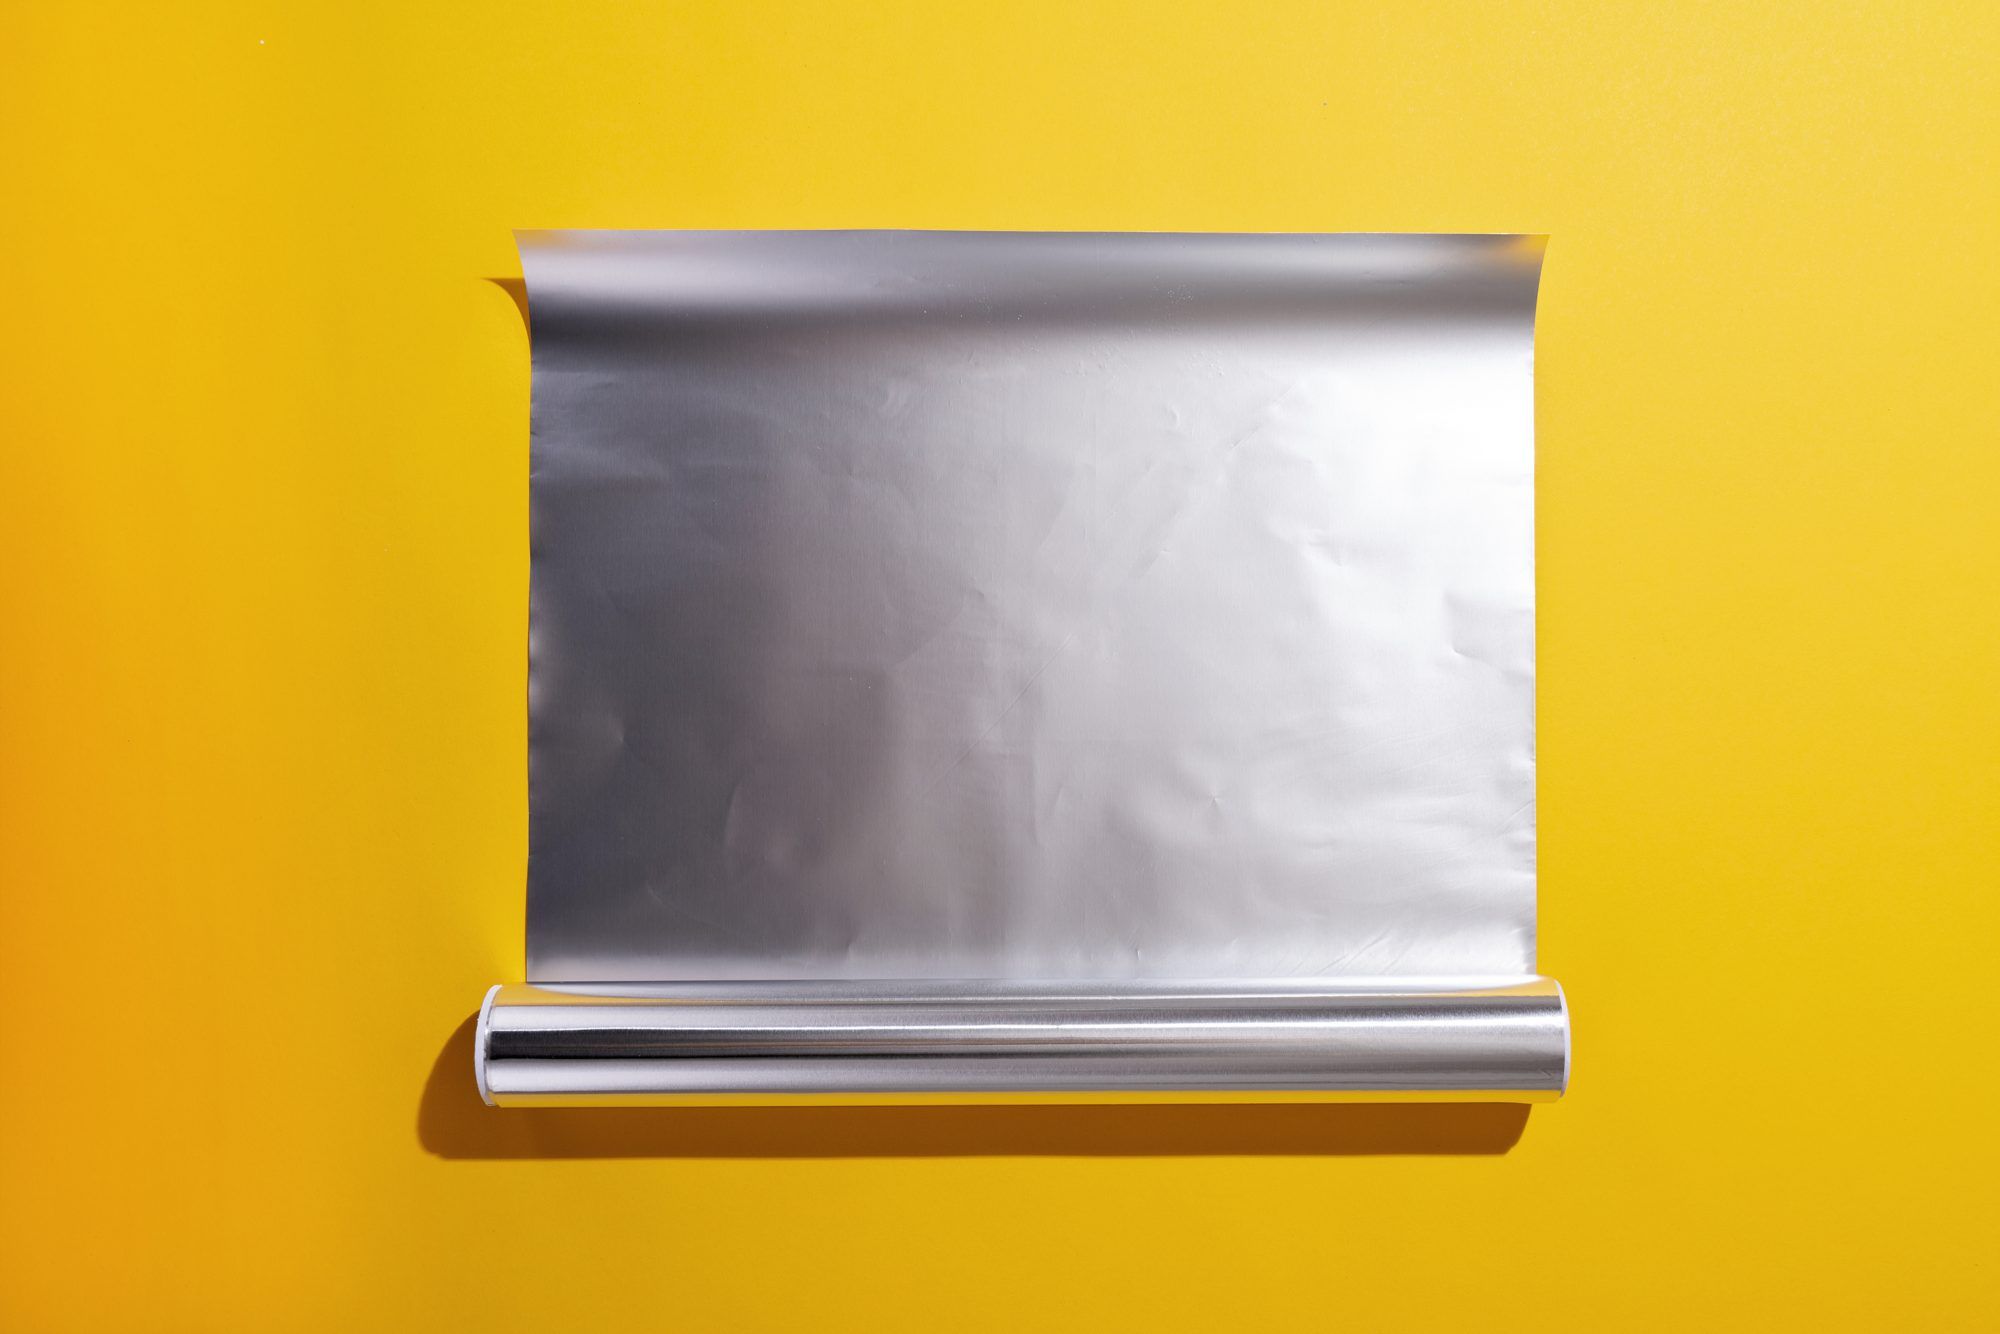 Kas õhufritüüri saab panna alumiiniumfooliumi?